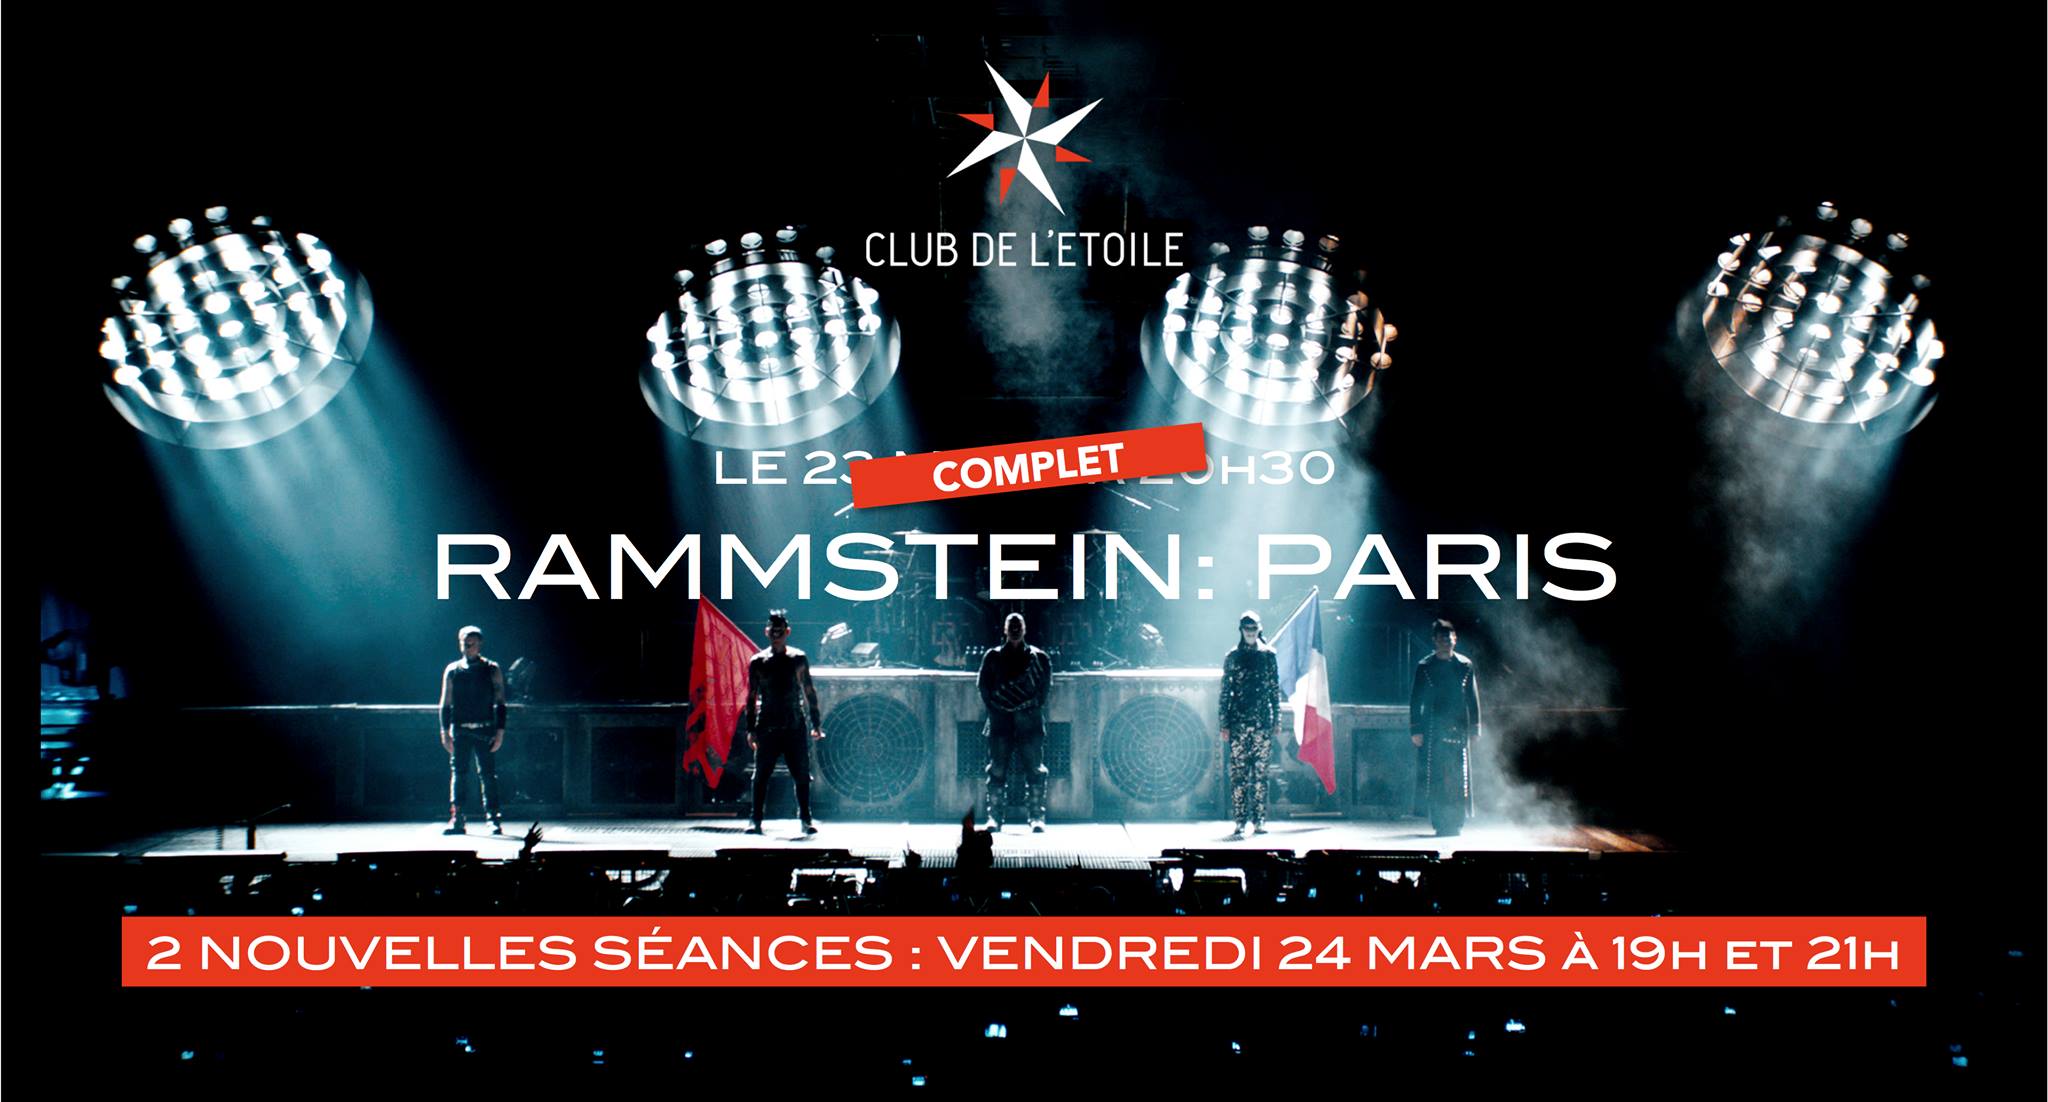 Rammstein – PARIS : Concert filmé @ Club de l’étoile (Paris), le 24 Mars 2017